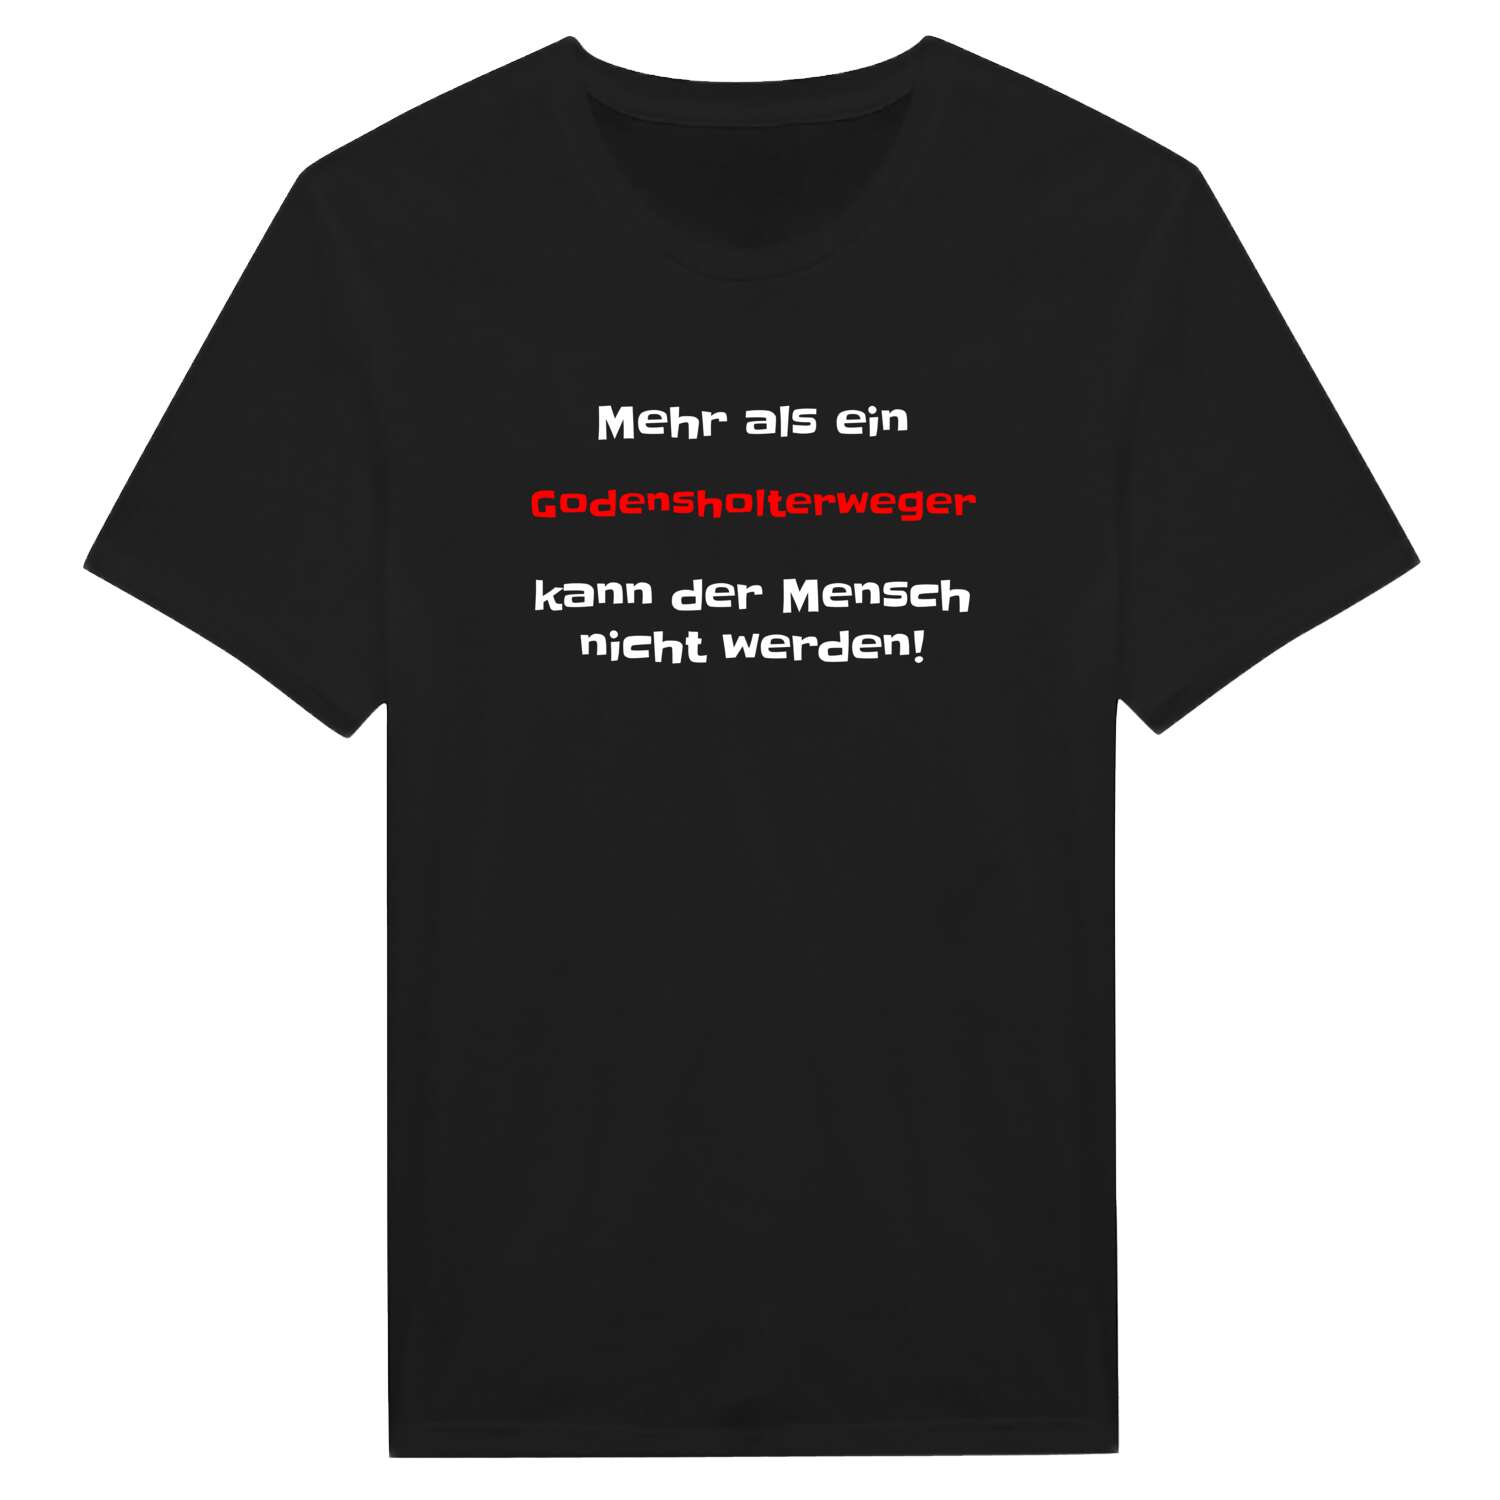 Godensholterweg T-Shirt »Mehr als ein«